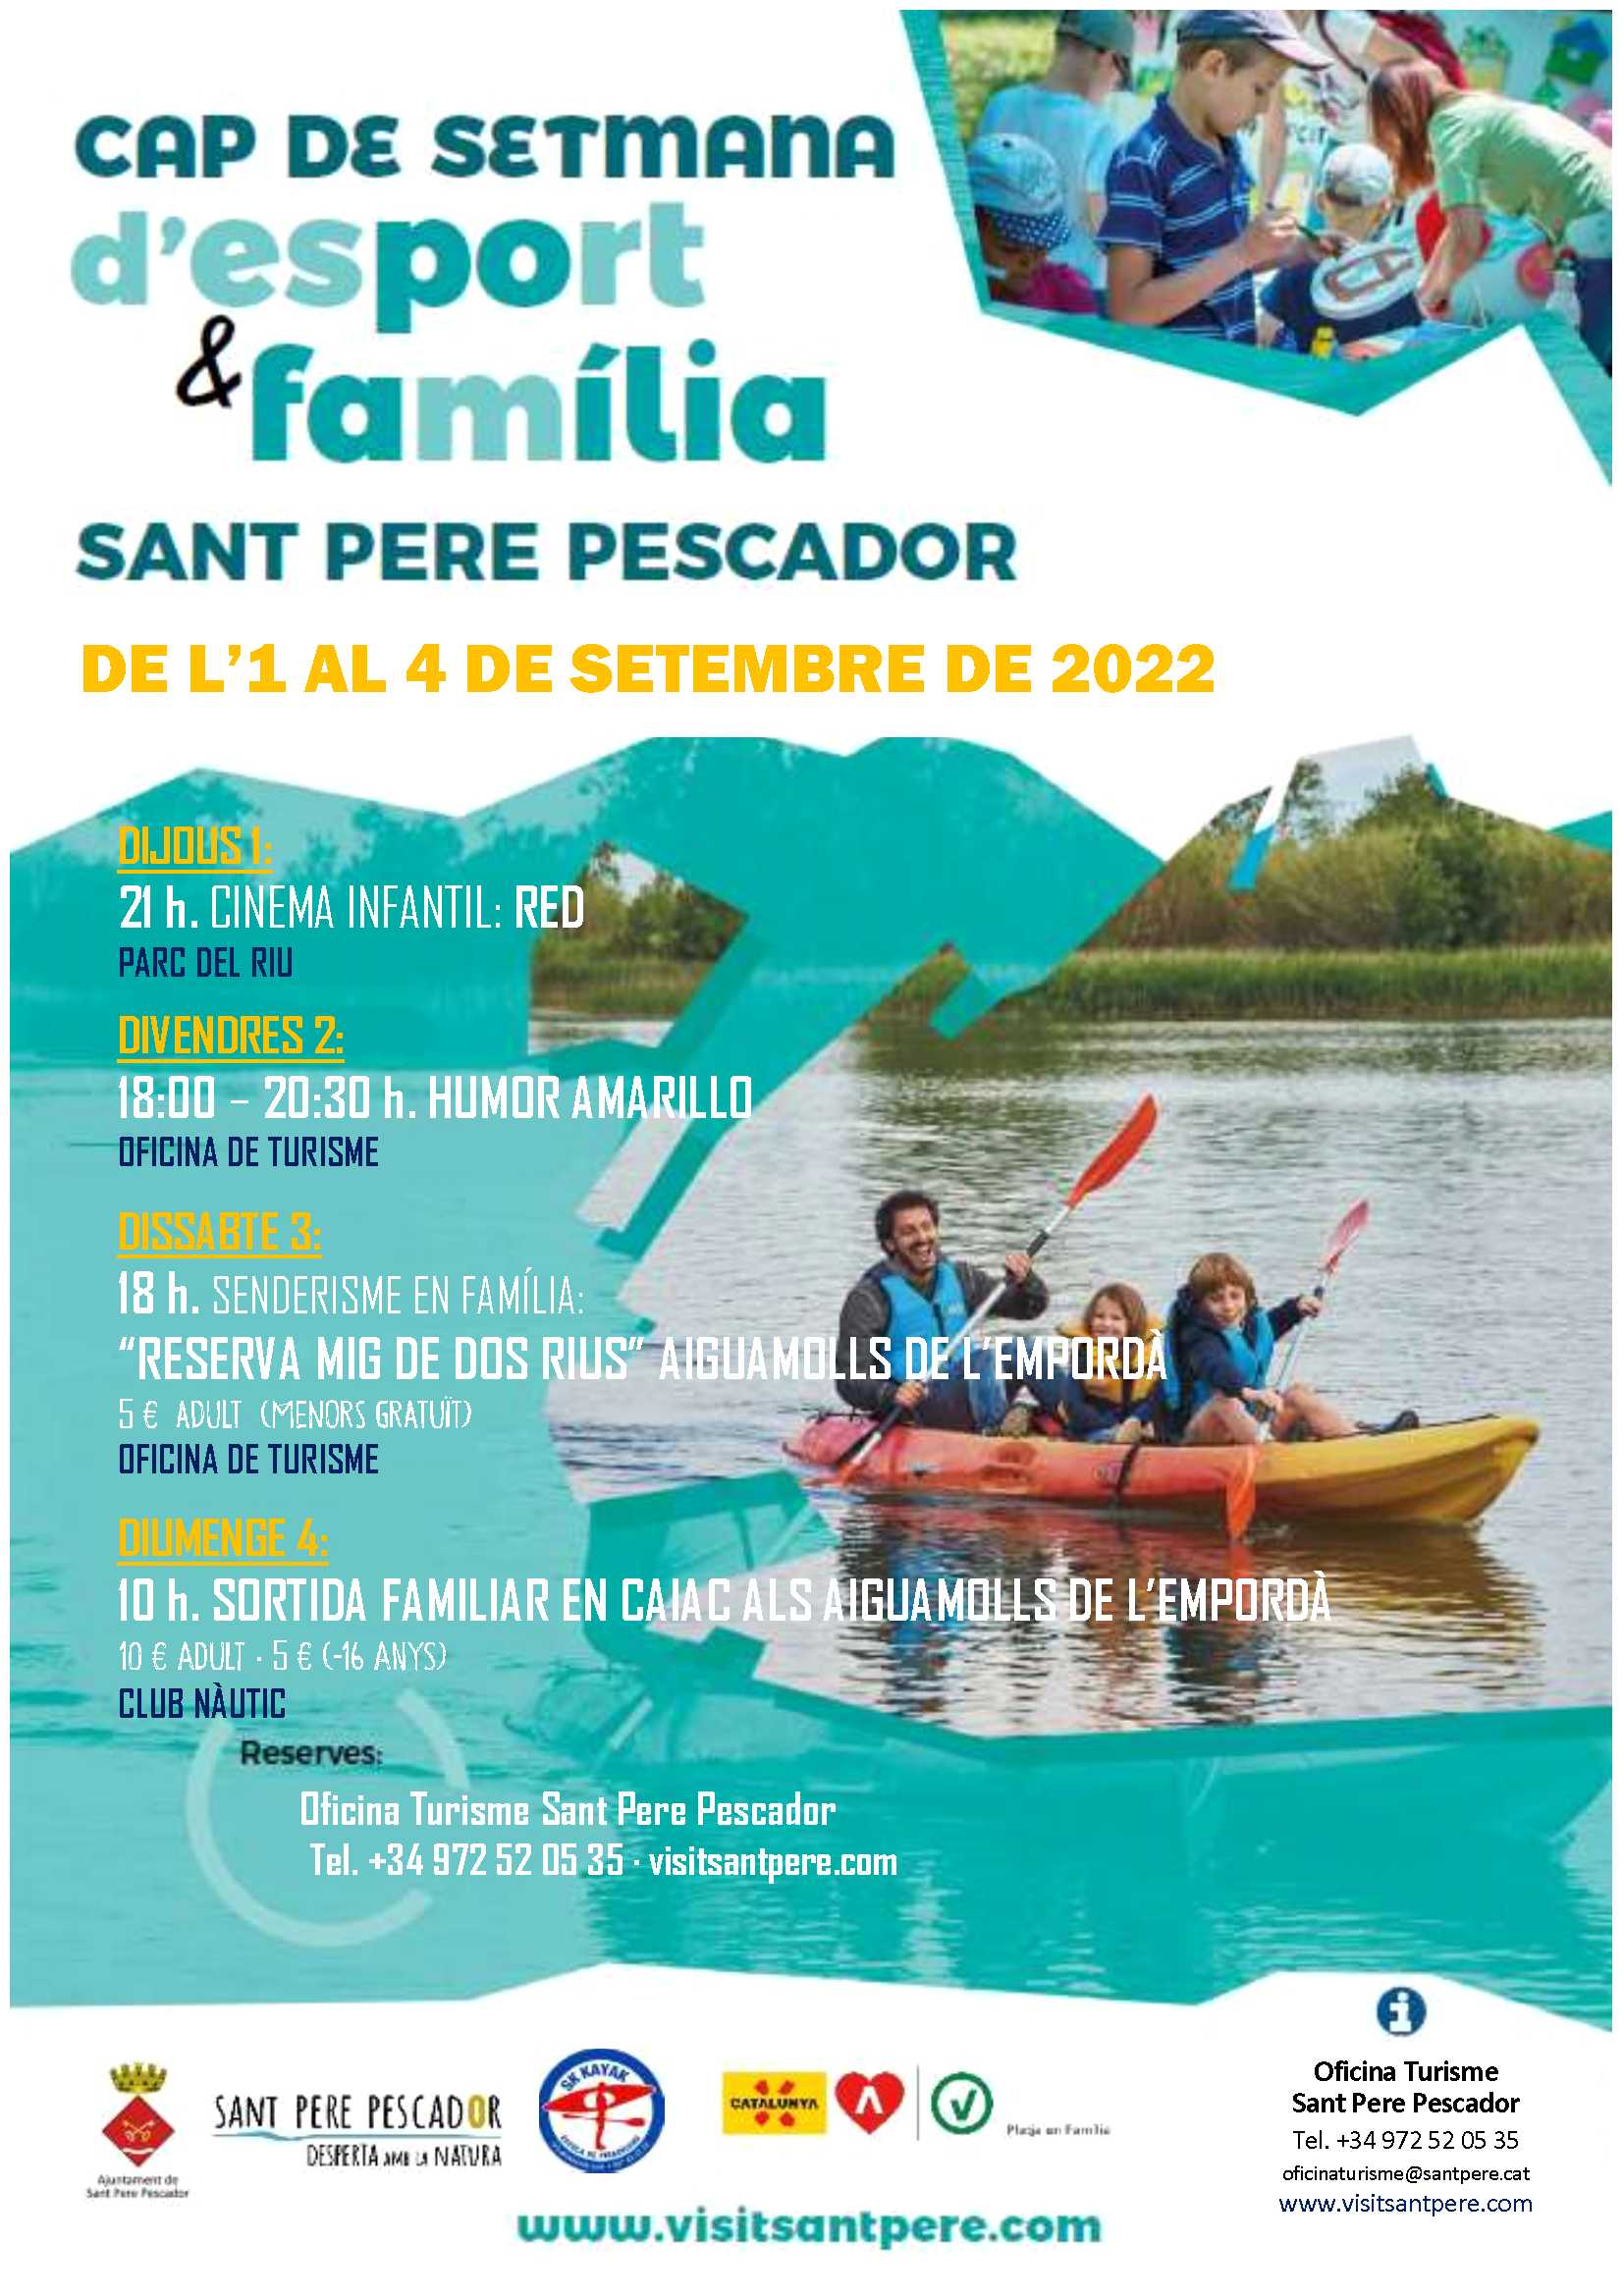 Sport & Familia - Sant pere pescador - empordaturisme